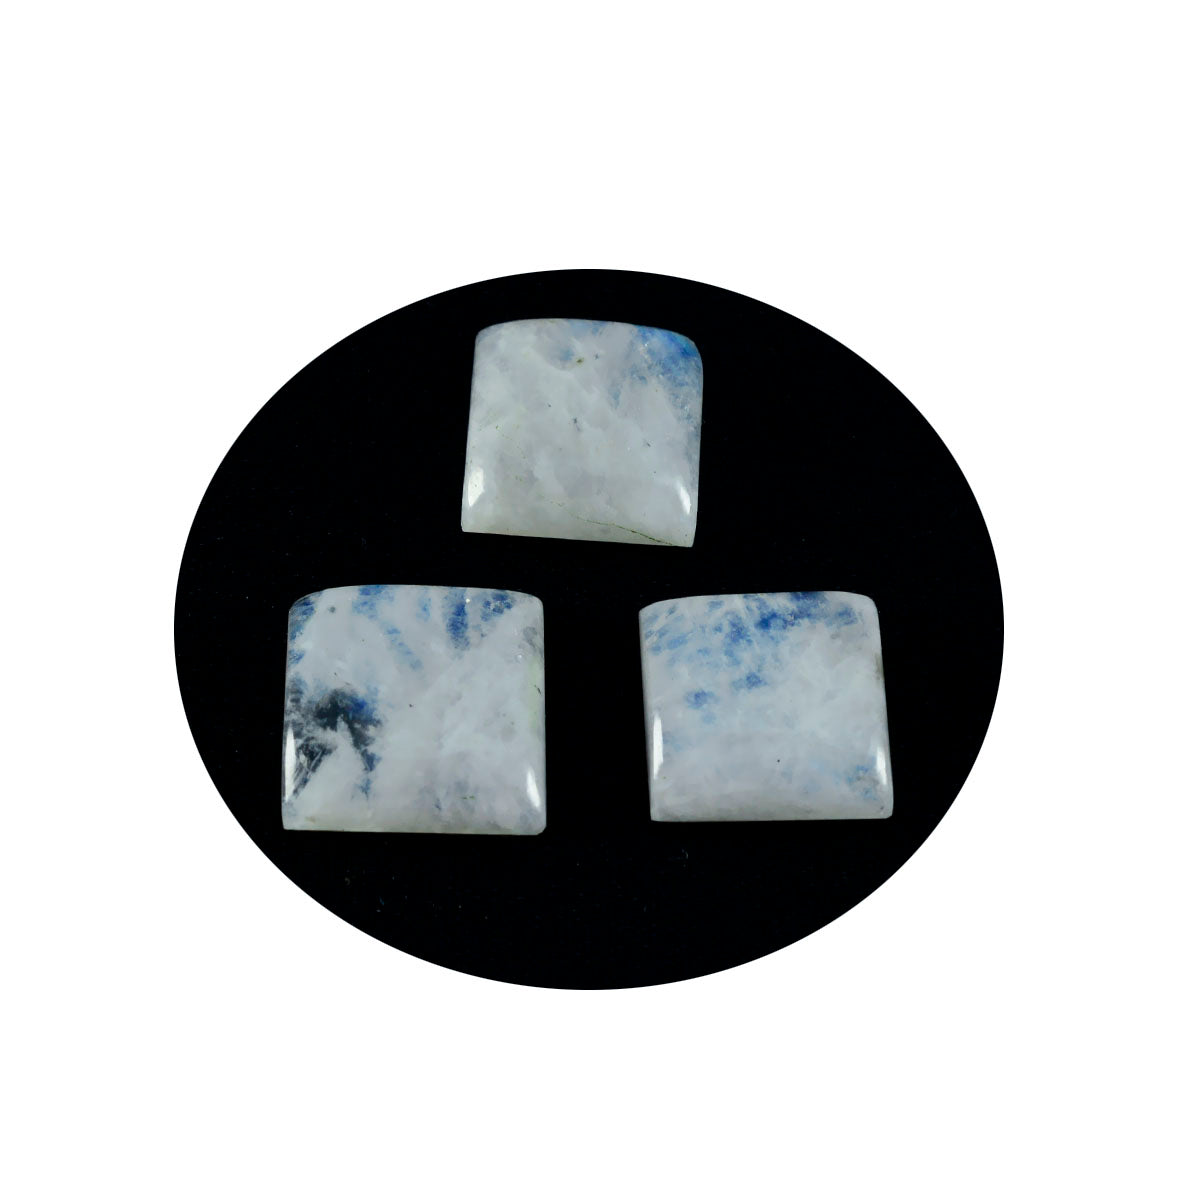 Riyogems 1 Stück weißer Regenbogen-Mondstein-Cabochon, 12 x 12 mm, quadratische Form, erstaunlicher Qualitätsedelstein